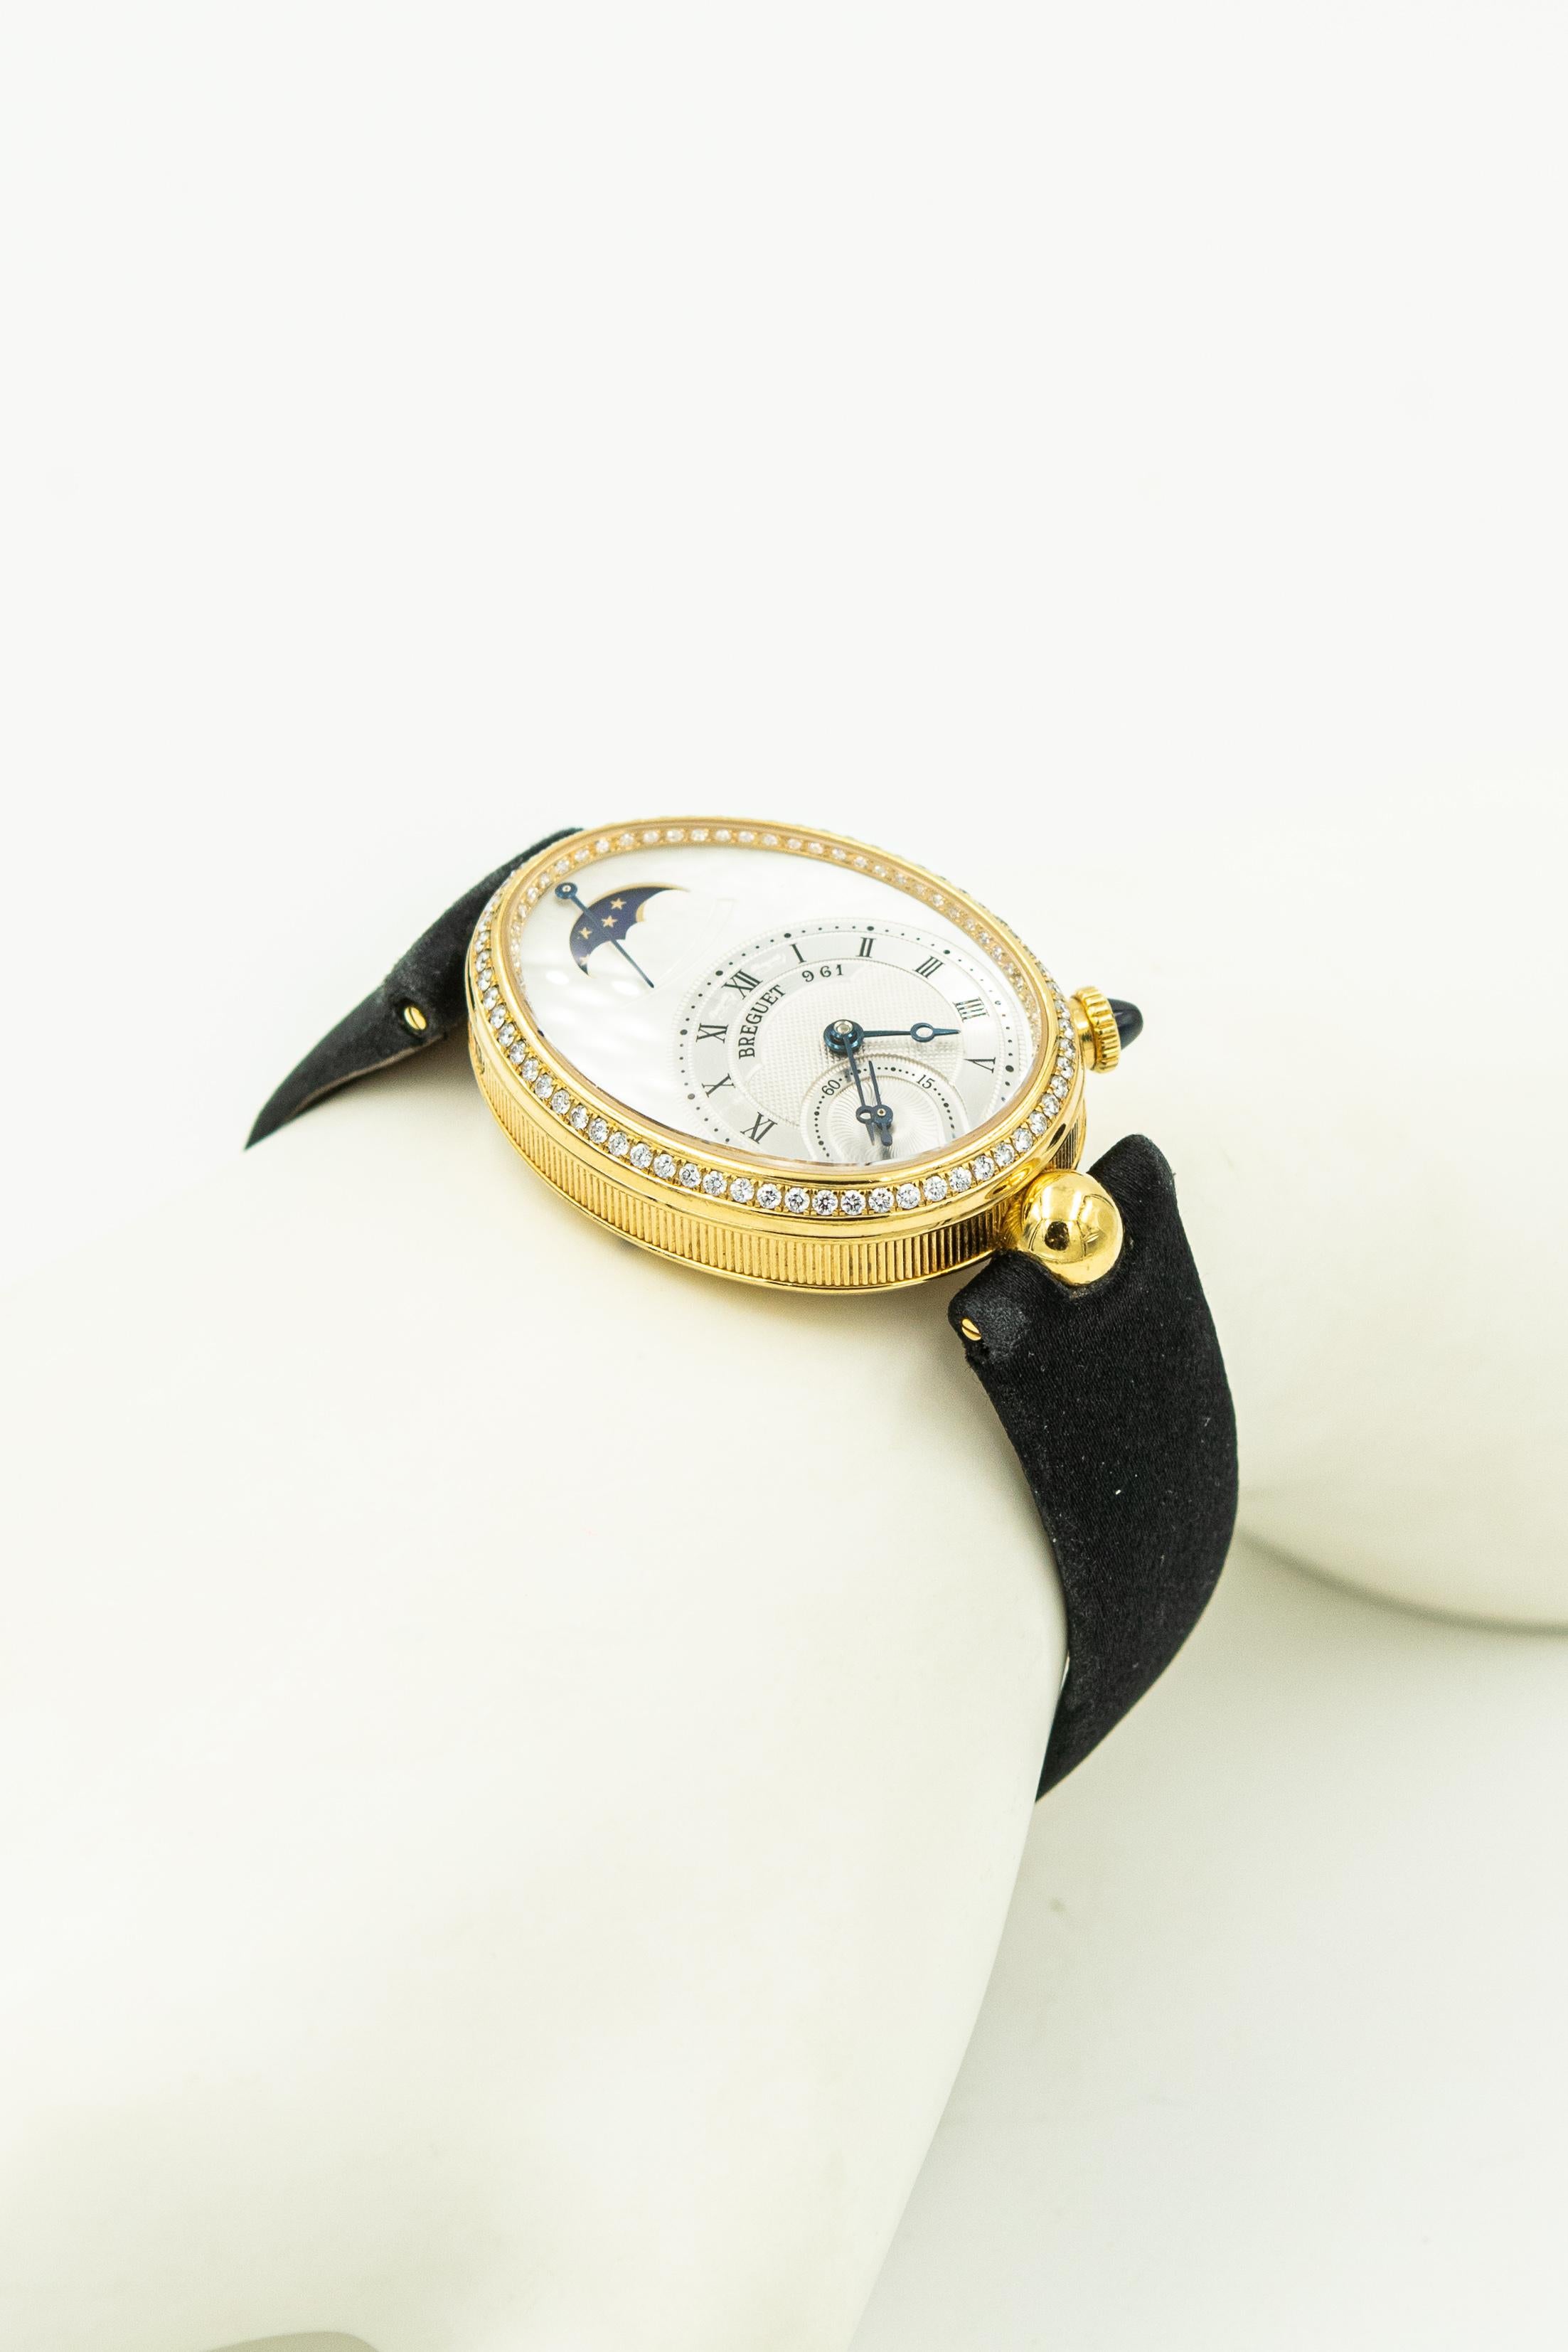 Montre-bracelet Breguet Reine de Naples en or jaune 18 carats avec lunette en diamants, phase de lune pour dames.  Référence 8908.  La lunette comporte 128 diamants blancs ronds et brillants d'un poids total estimé à 0,83 carats.  Le bracelet en